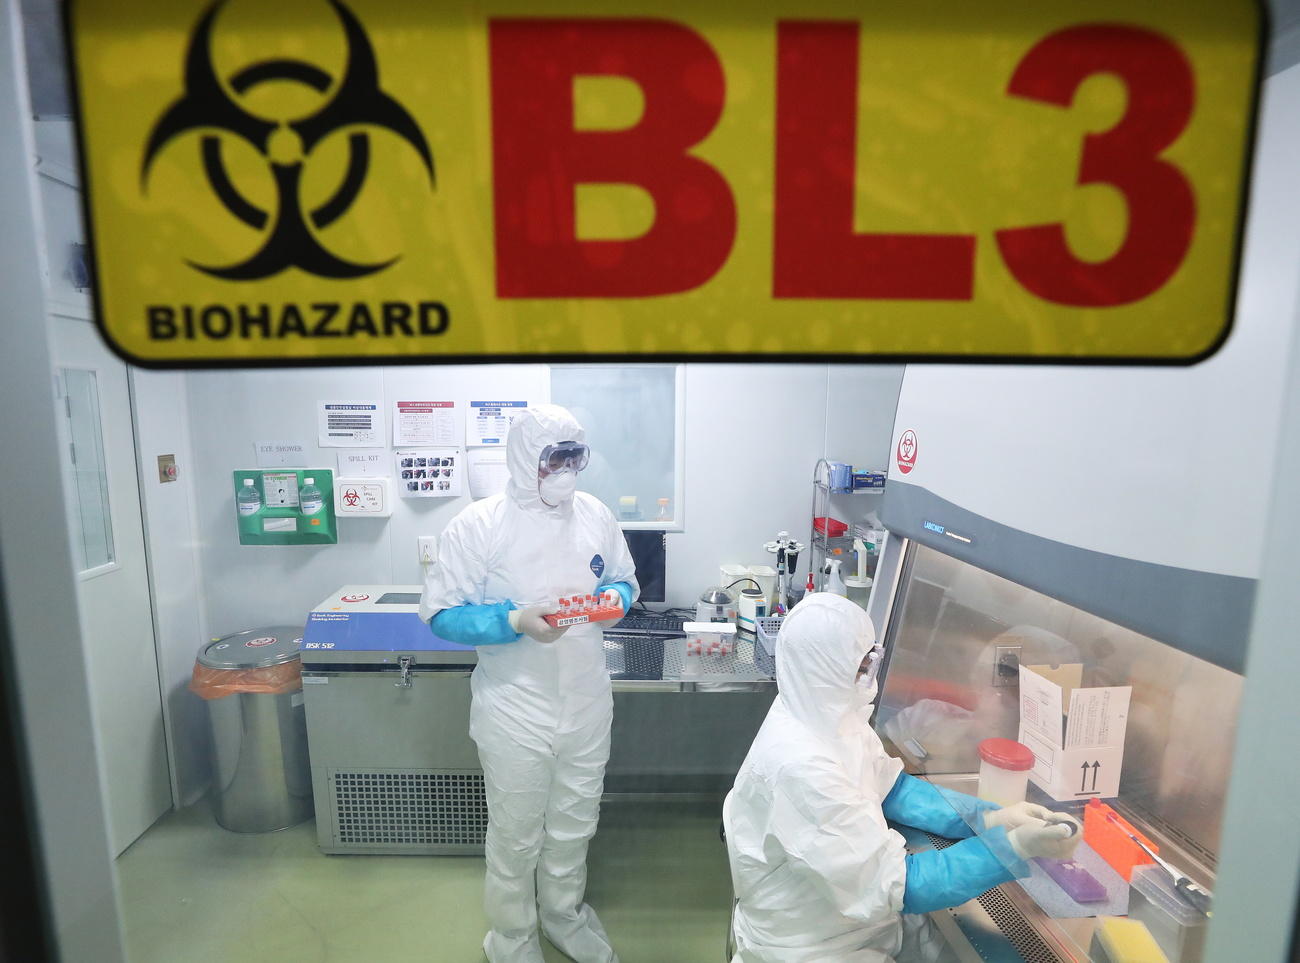 Interno di un laboratorio; operatori completamente coperti, protetti da maschera e guanti; cartello BL3